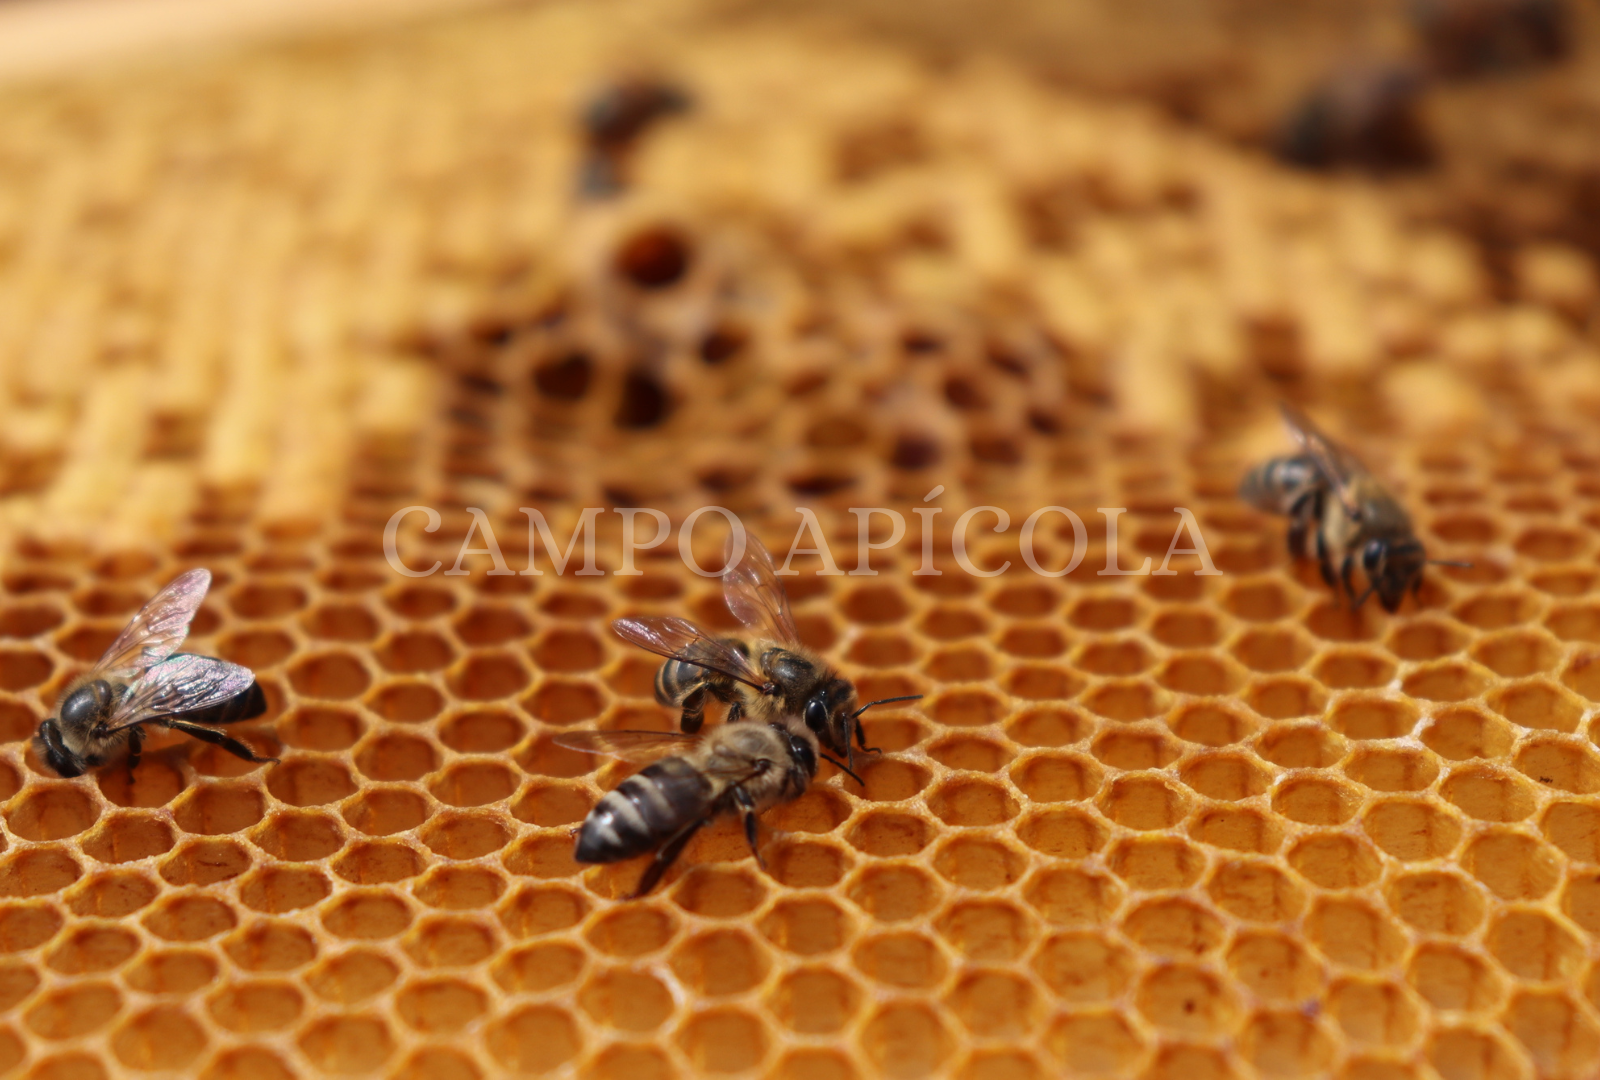 Hacer velas de pura cera de abejas con aroma de miel – El Mercado de Honey  Tina